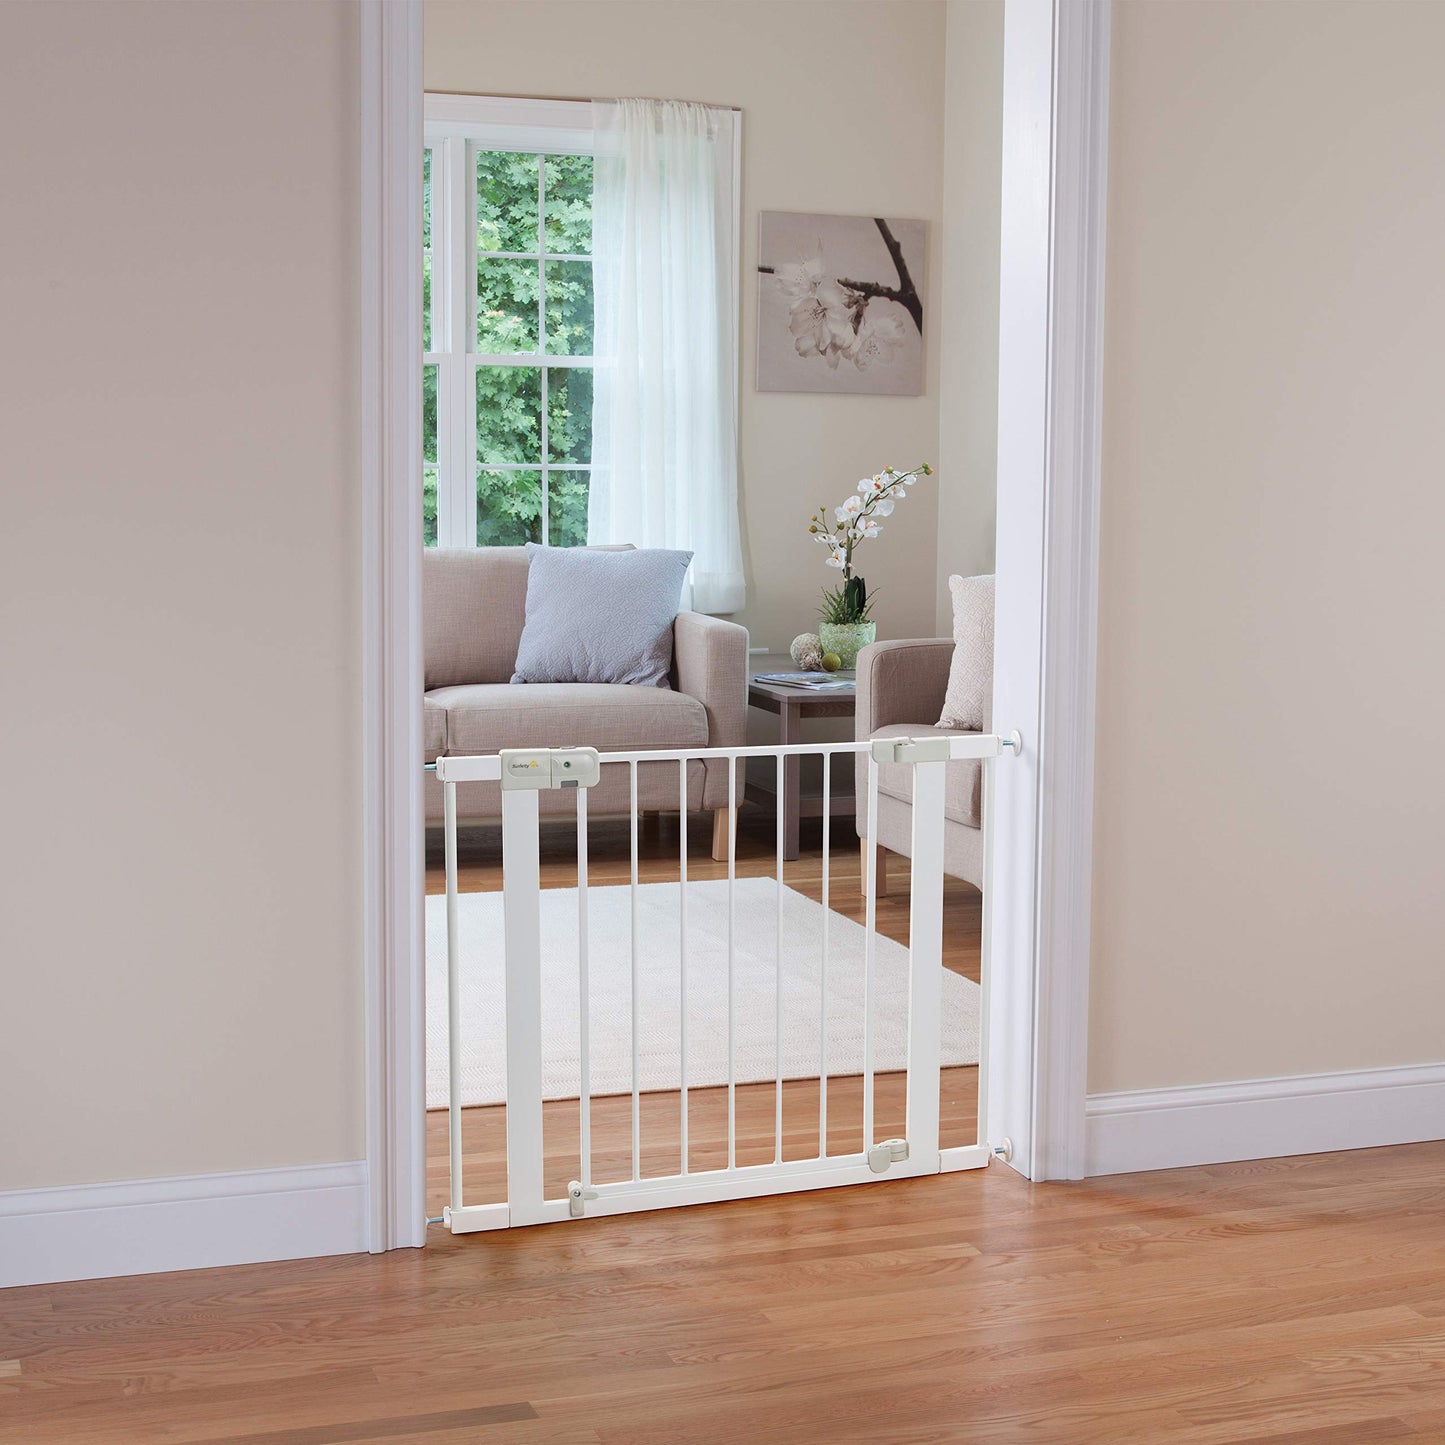 Safety 1st - Puerta para bebé con cierre automático y fijación a presión, para espacios desde 74 hasta 96 cm